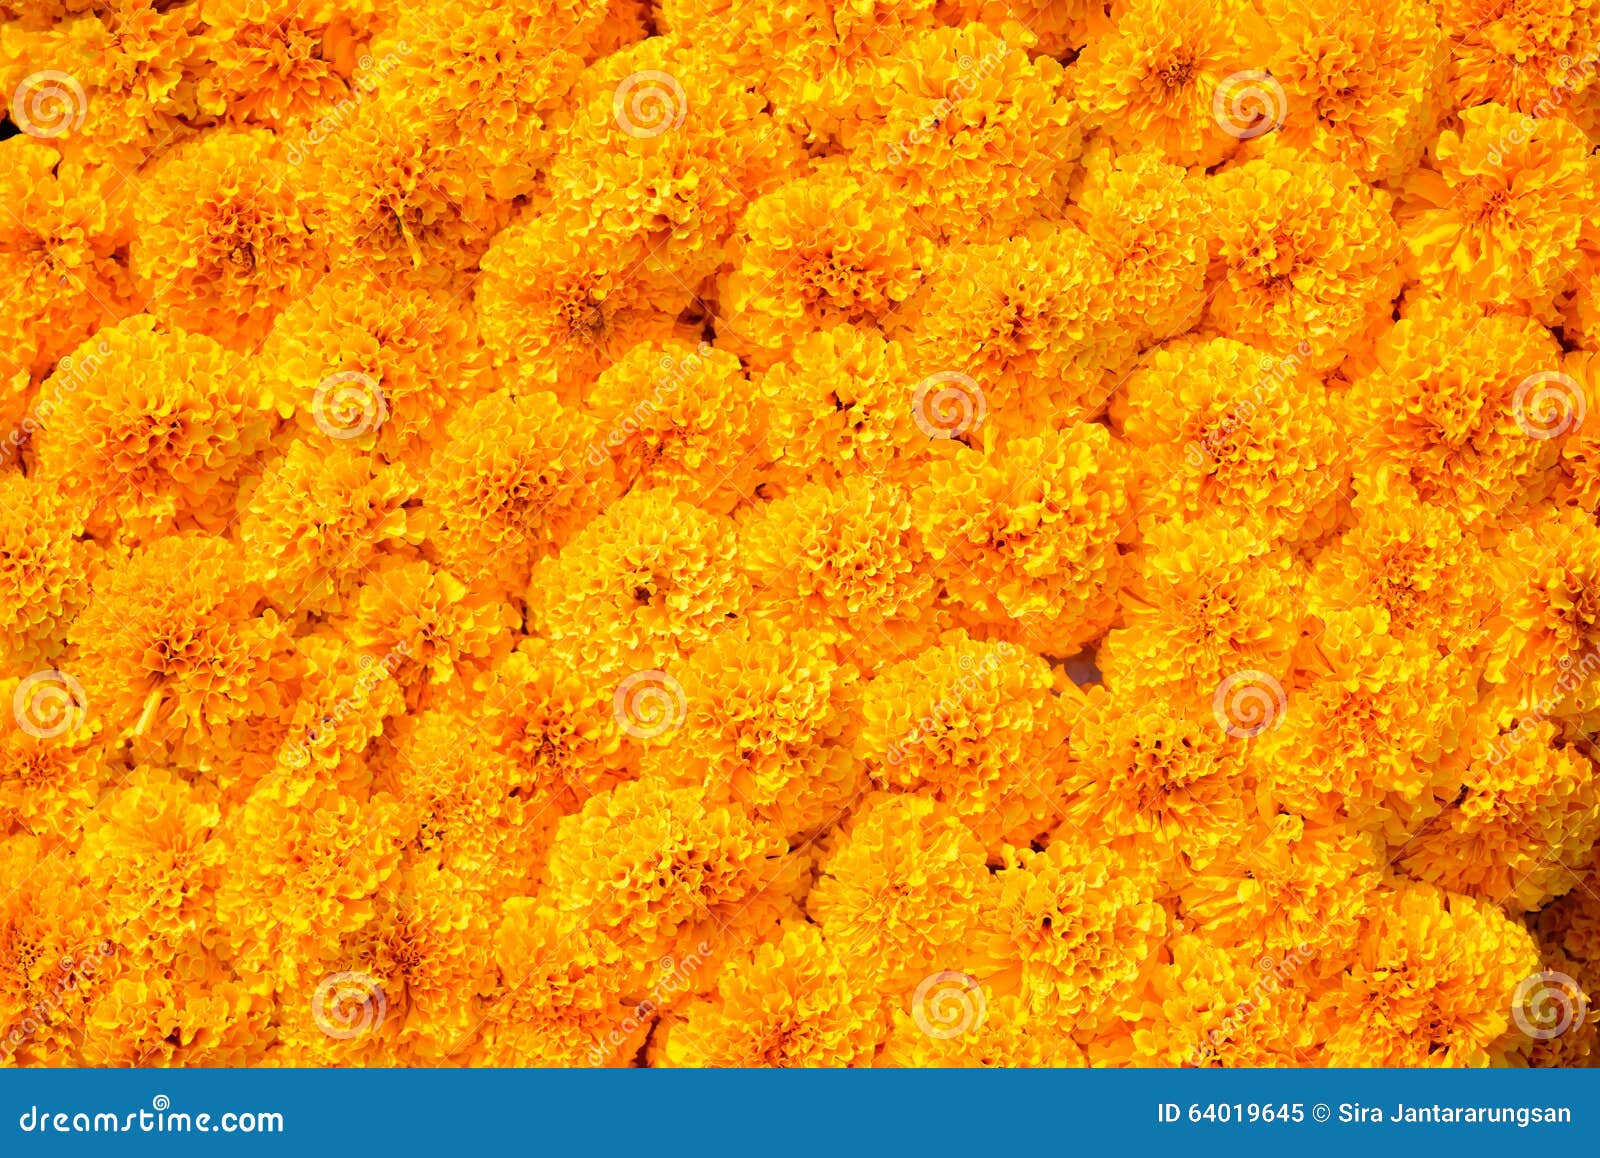 Marigold flower background stock image. Image of market - 64019645